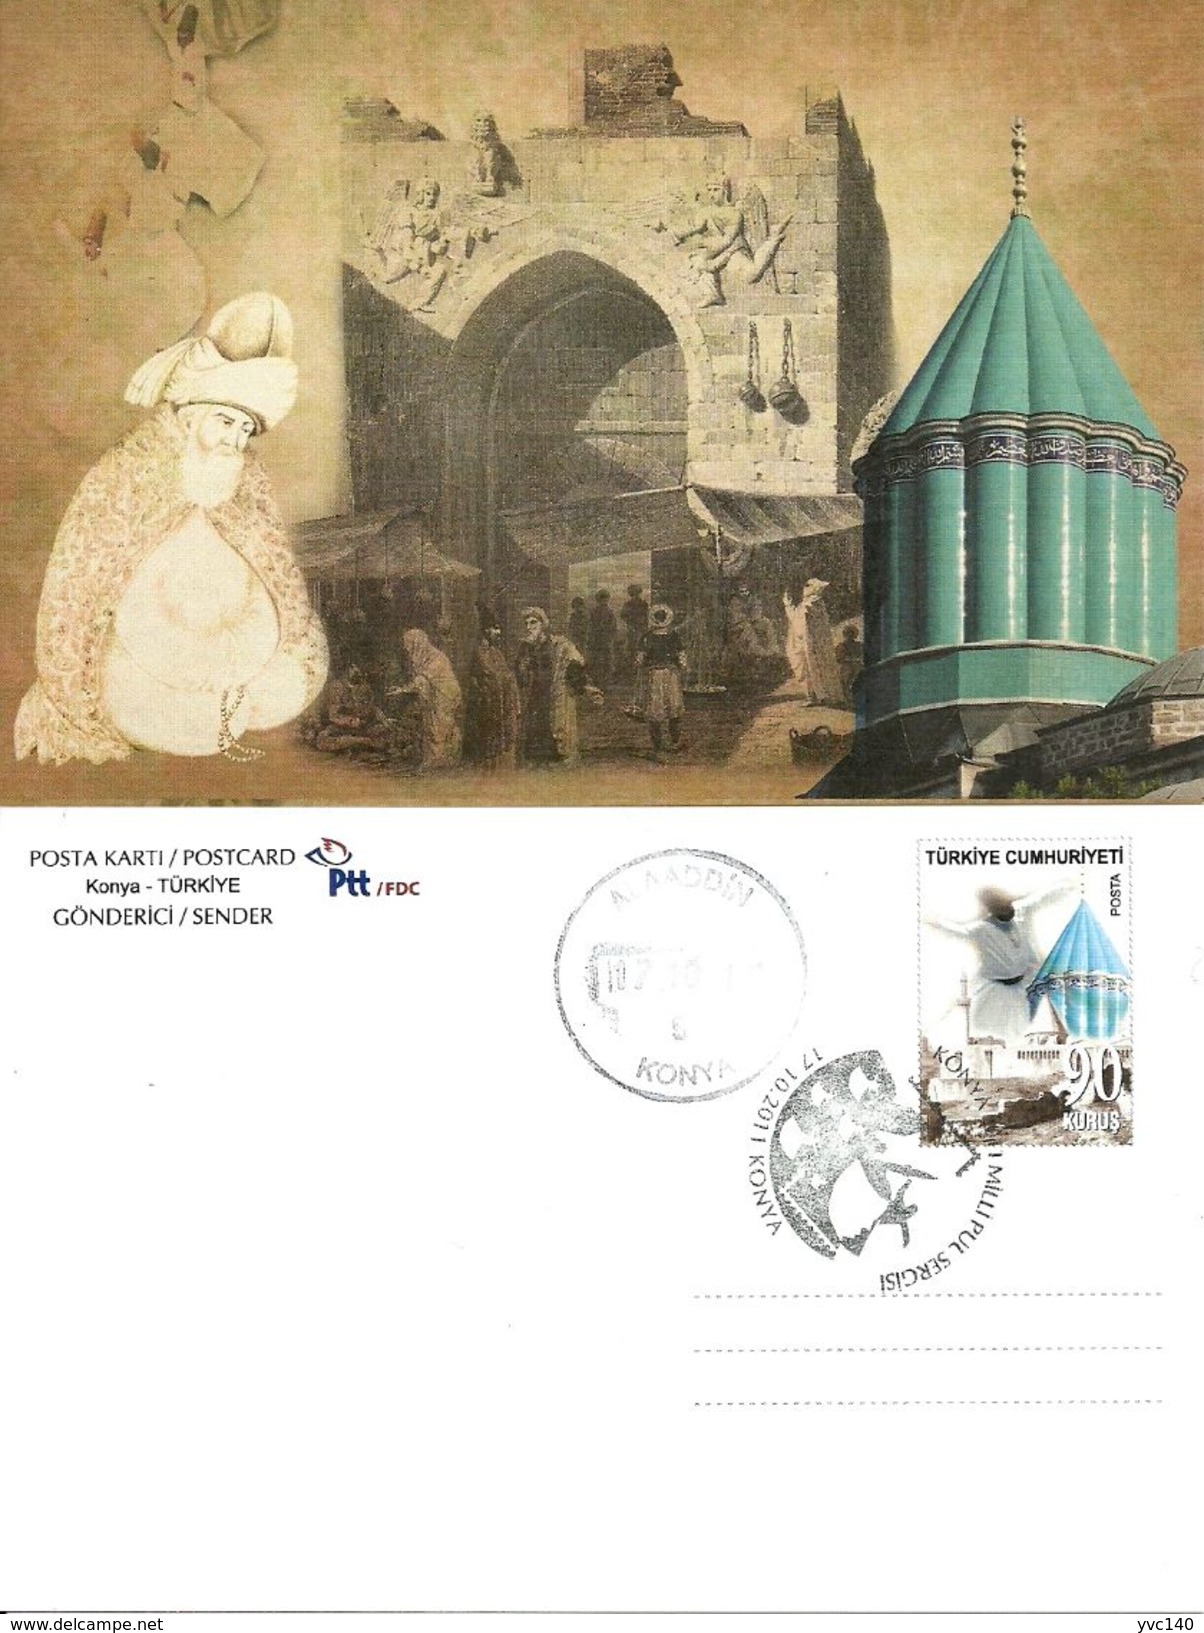 Turkey; 2011 "National Stamp Exhibition, Konya" Special Portfolio - Postal Stationery